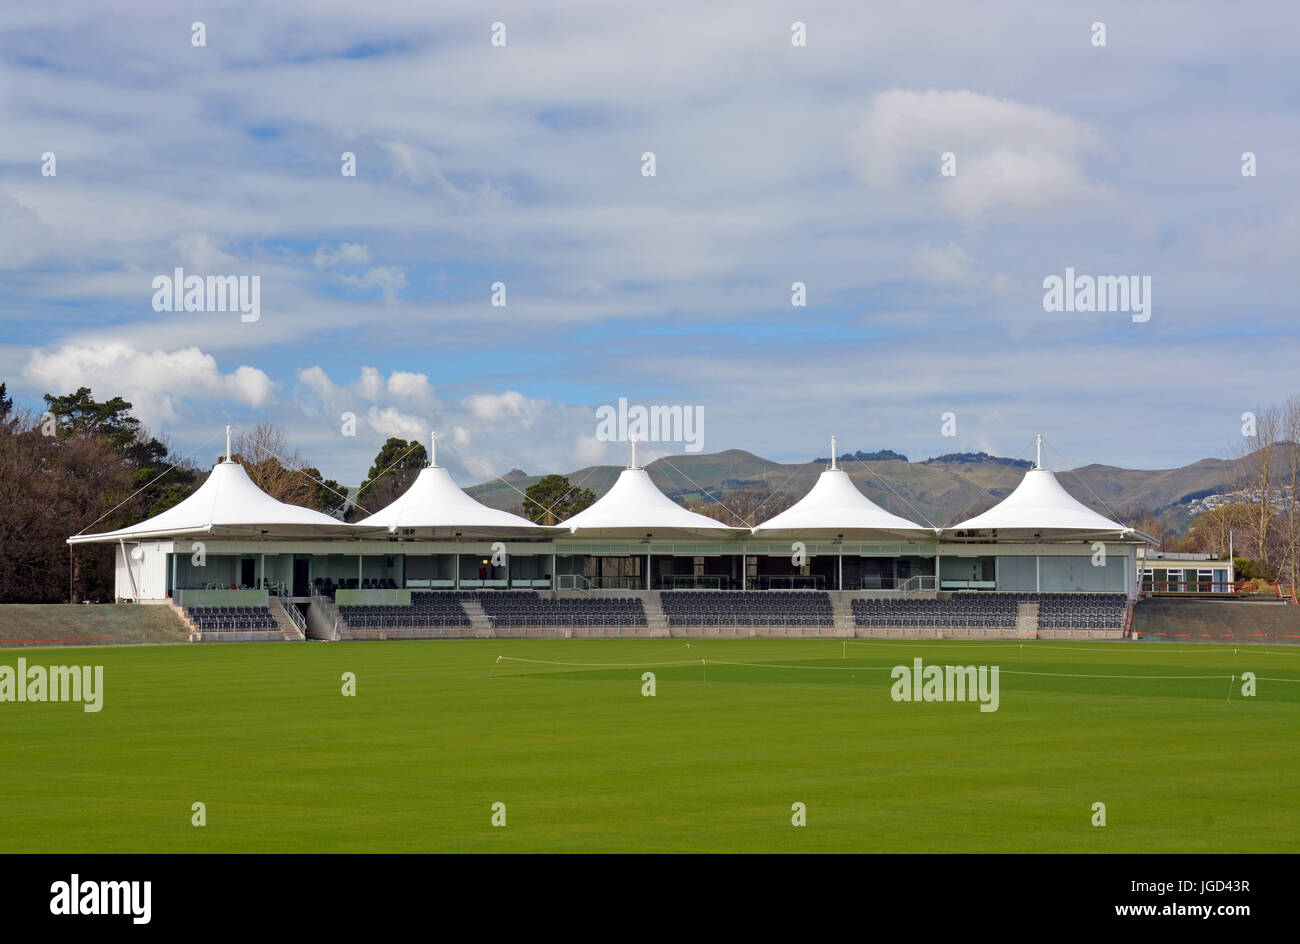 Nouveau Pavillon Cricket ovale Hagley a ouvert ses portes à Hagley Park 3 mois avant la Coupe du Monde de Cricket 2015 commence à Christchurch. Banque D'Images